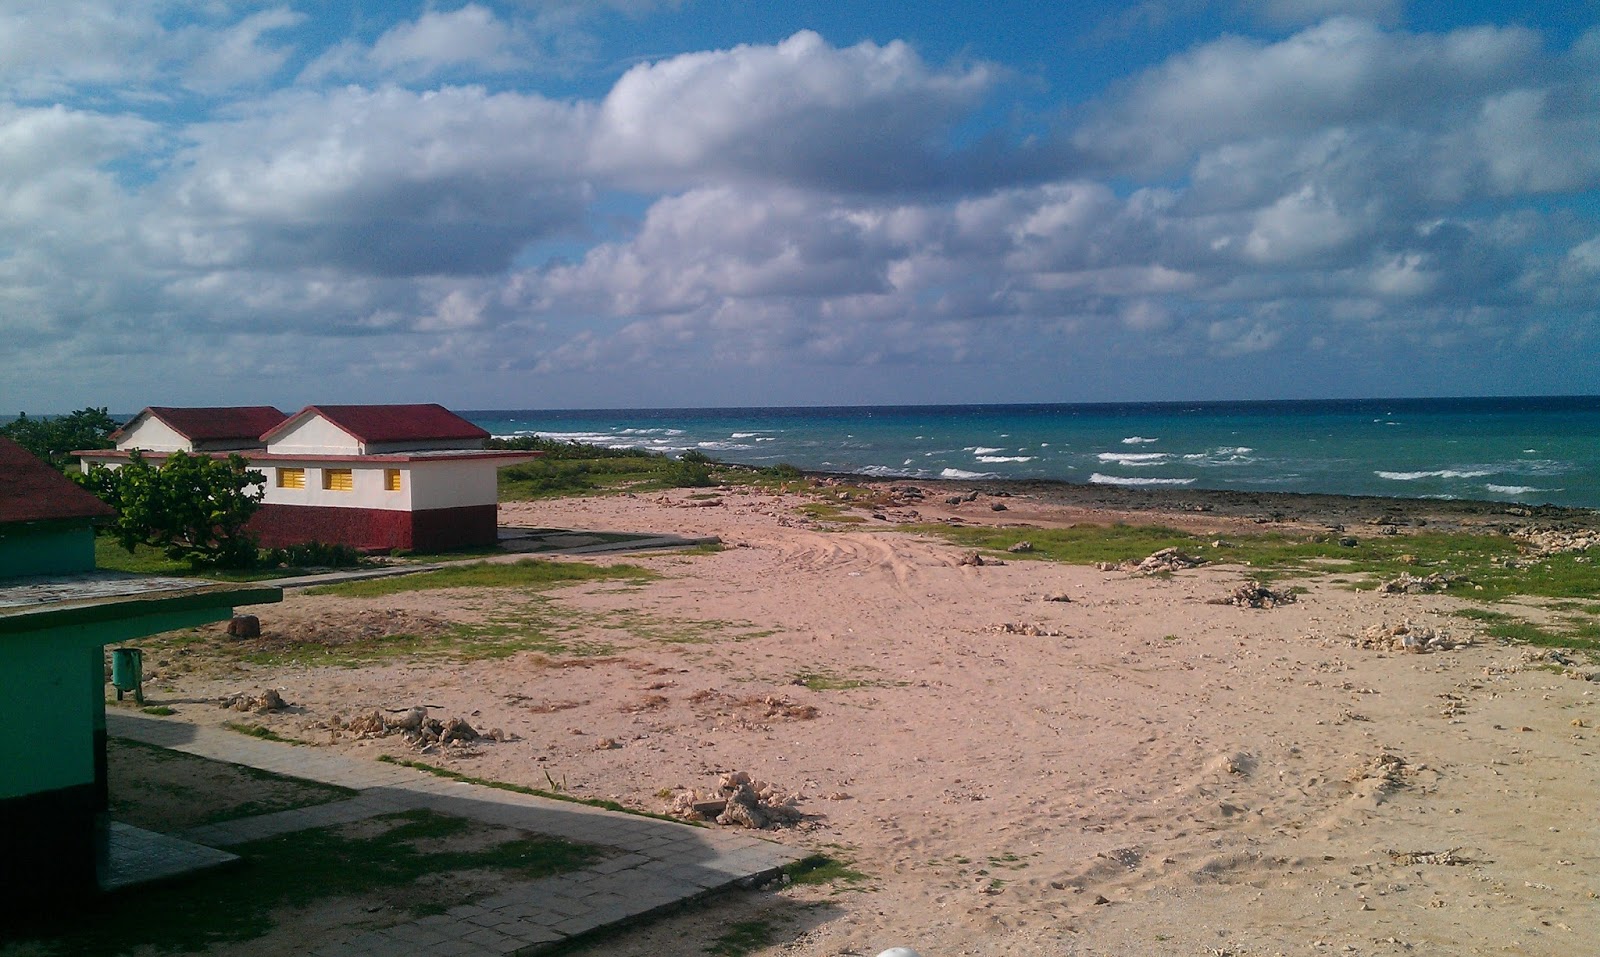 Fotografie cu Playa Corella cu o suprafață de nisip strălucitor